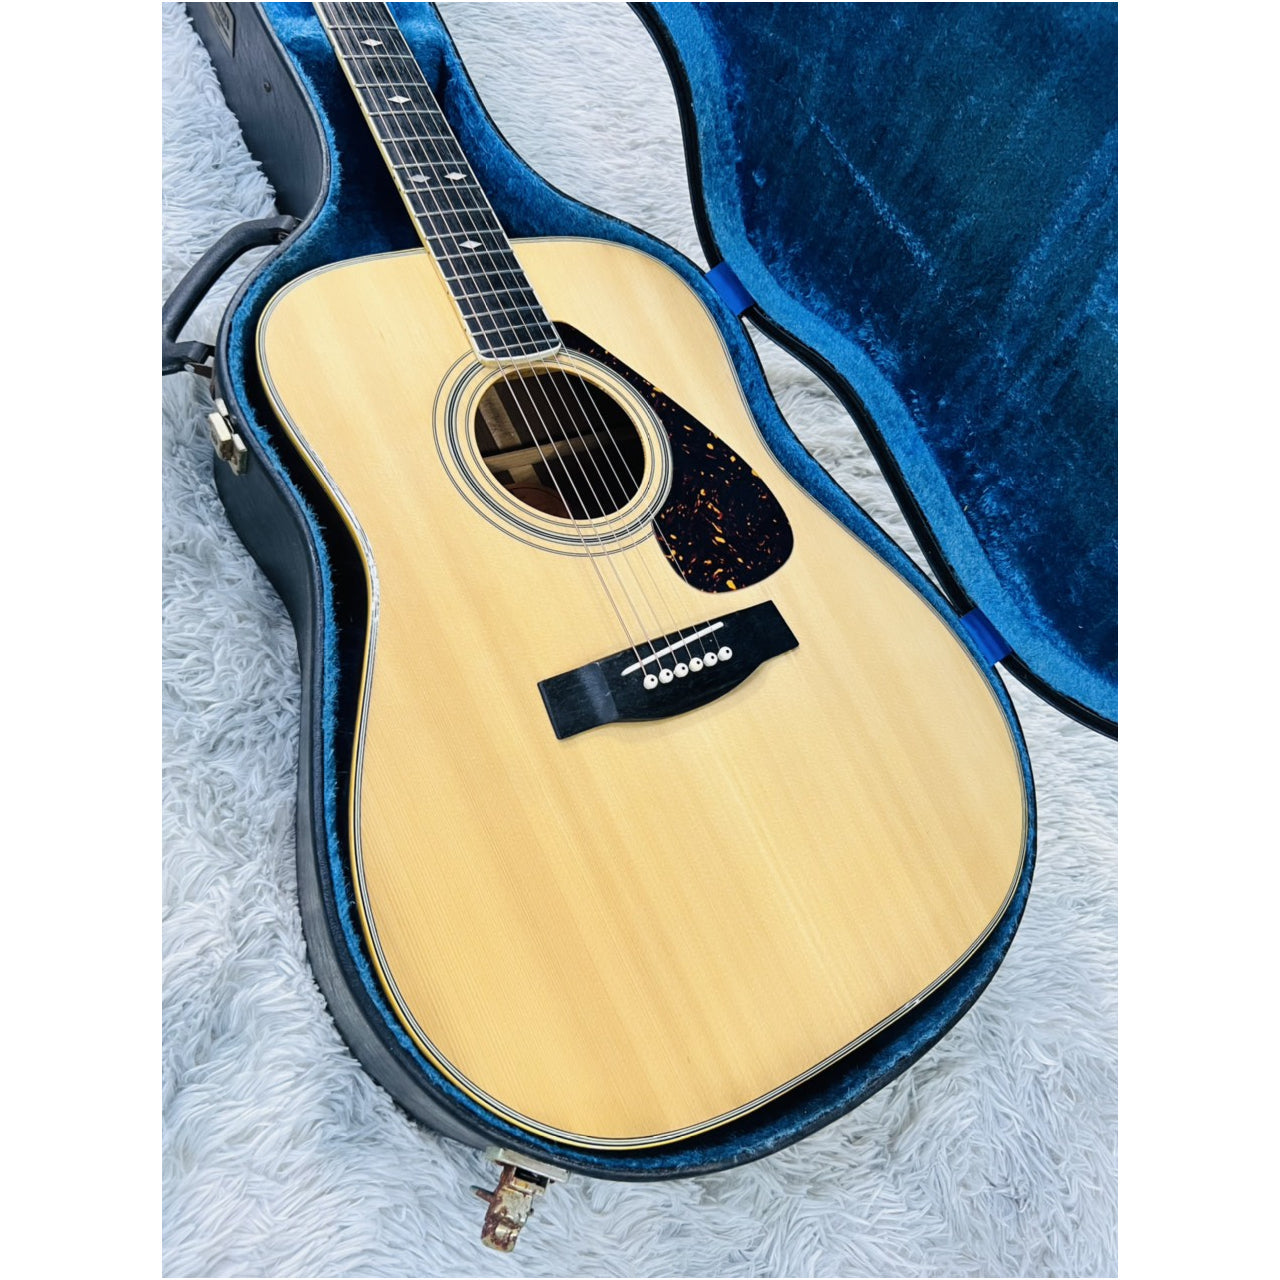 Đàn Guitar Acoustic Morris MD525 - Qua Sử Dụng - Việt Music